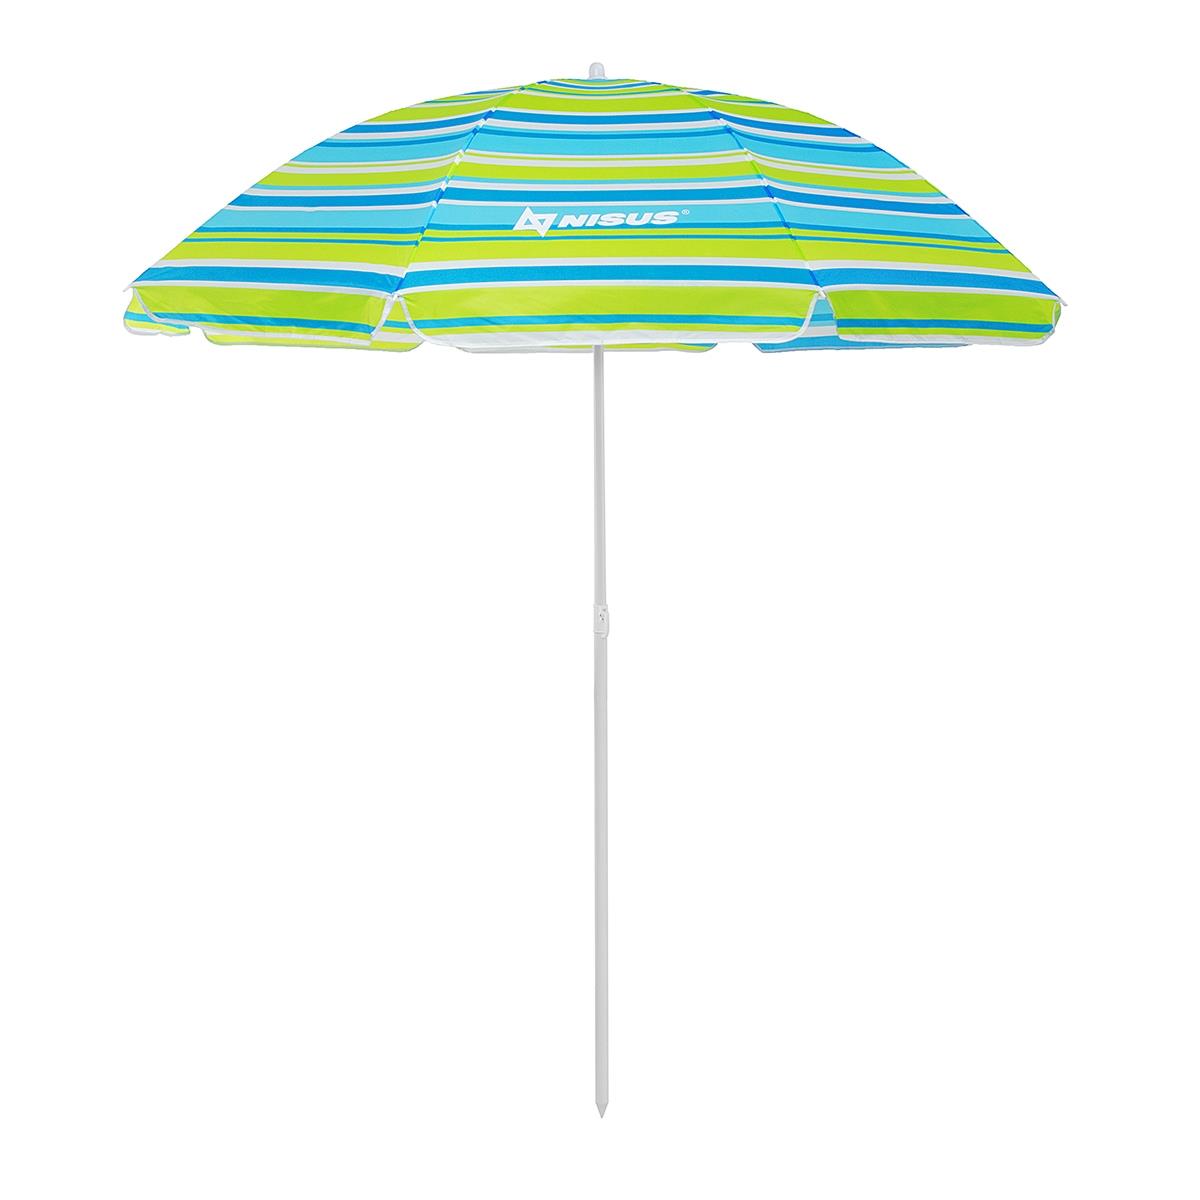 Зонт пляжный d 2,00м  с наклоном (22/25/170Т) NA-200N-SB Nisus зонт пляжный d 2 00м с наклоном голубой 22 25 170т na 200n b nisus